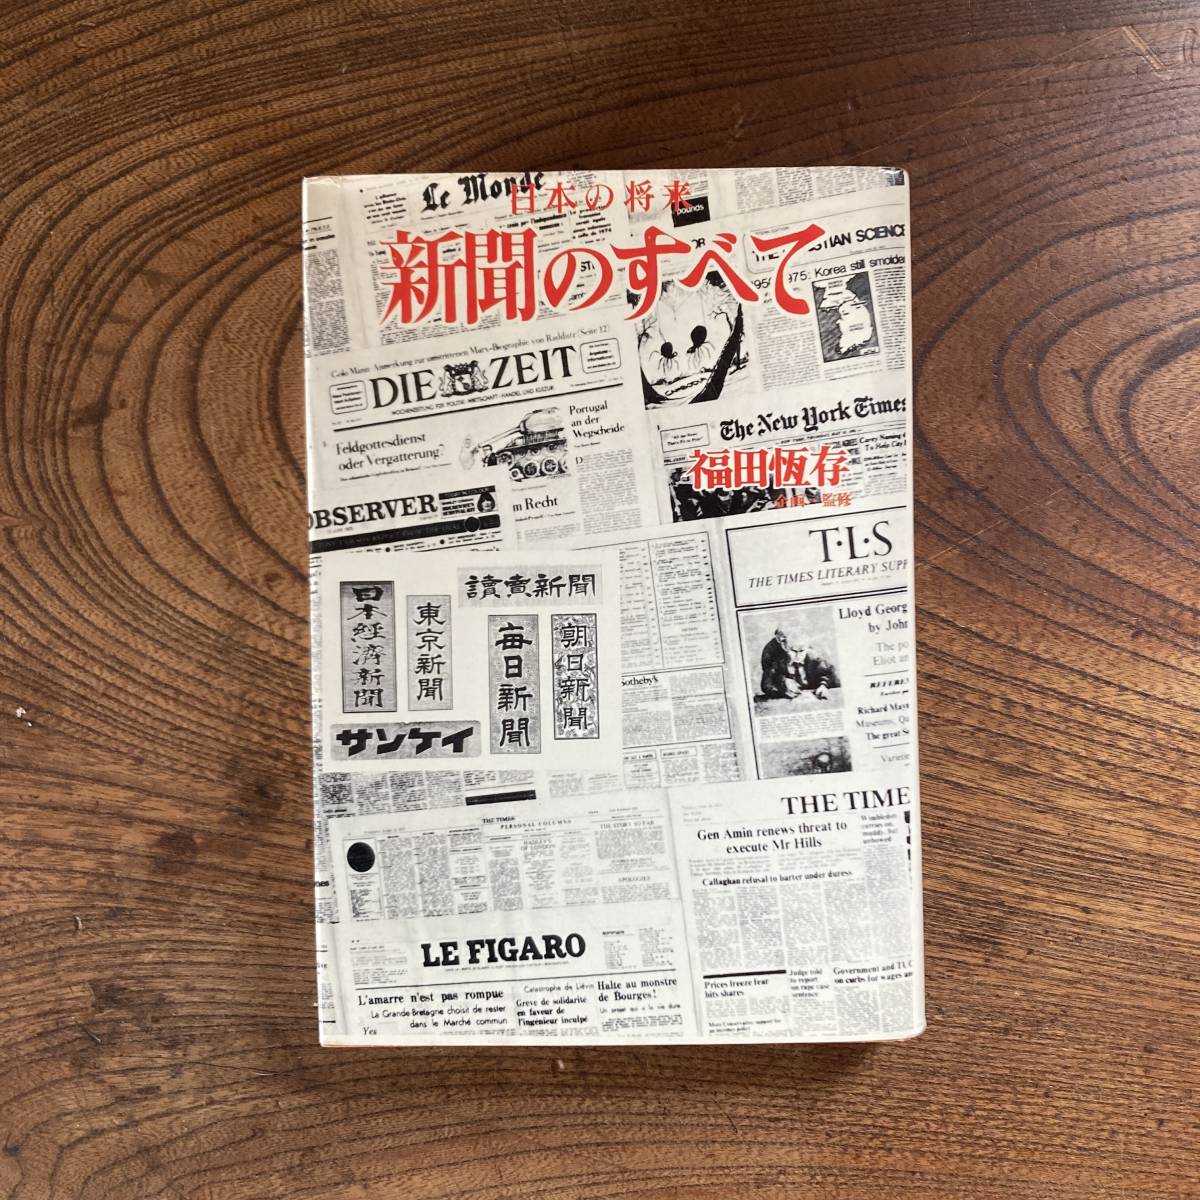 A < японский будущее газета. все | Fukuda ..| Showa 50 год | высота дерево книжный магазин > средства массовой коммуникации ja-na ритм 